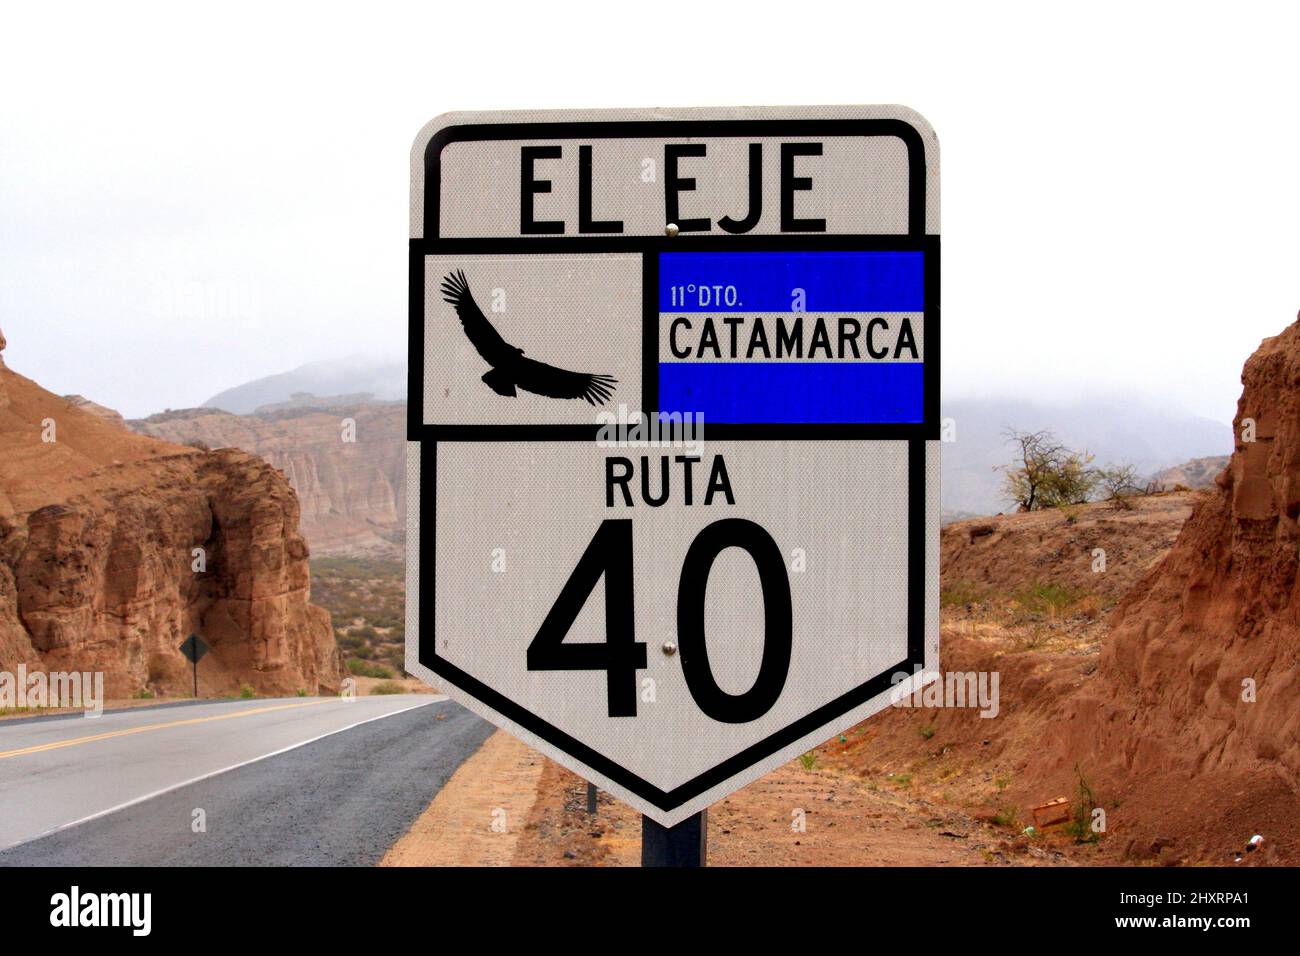 La famosa carretera a El Eje en Catamarca por la ruta 40 Foto de stock